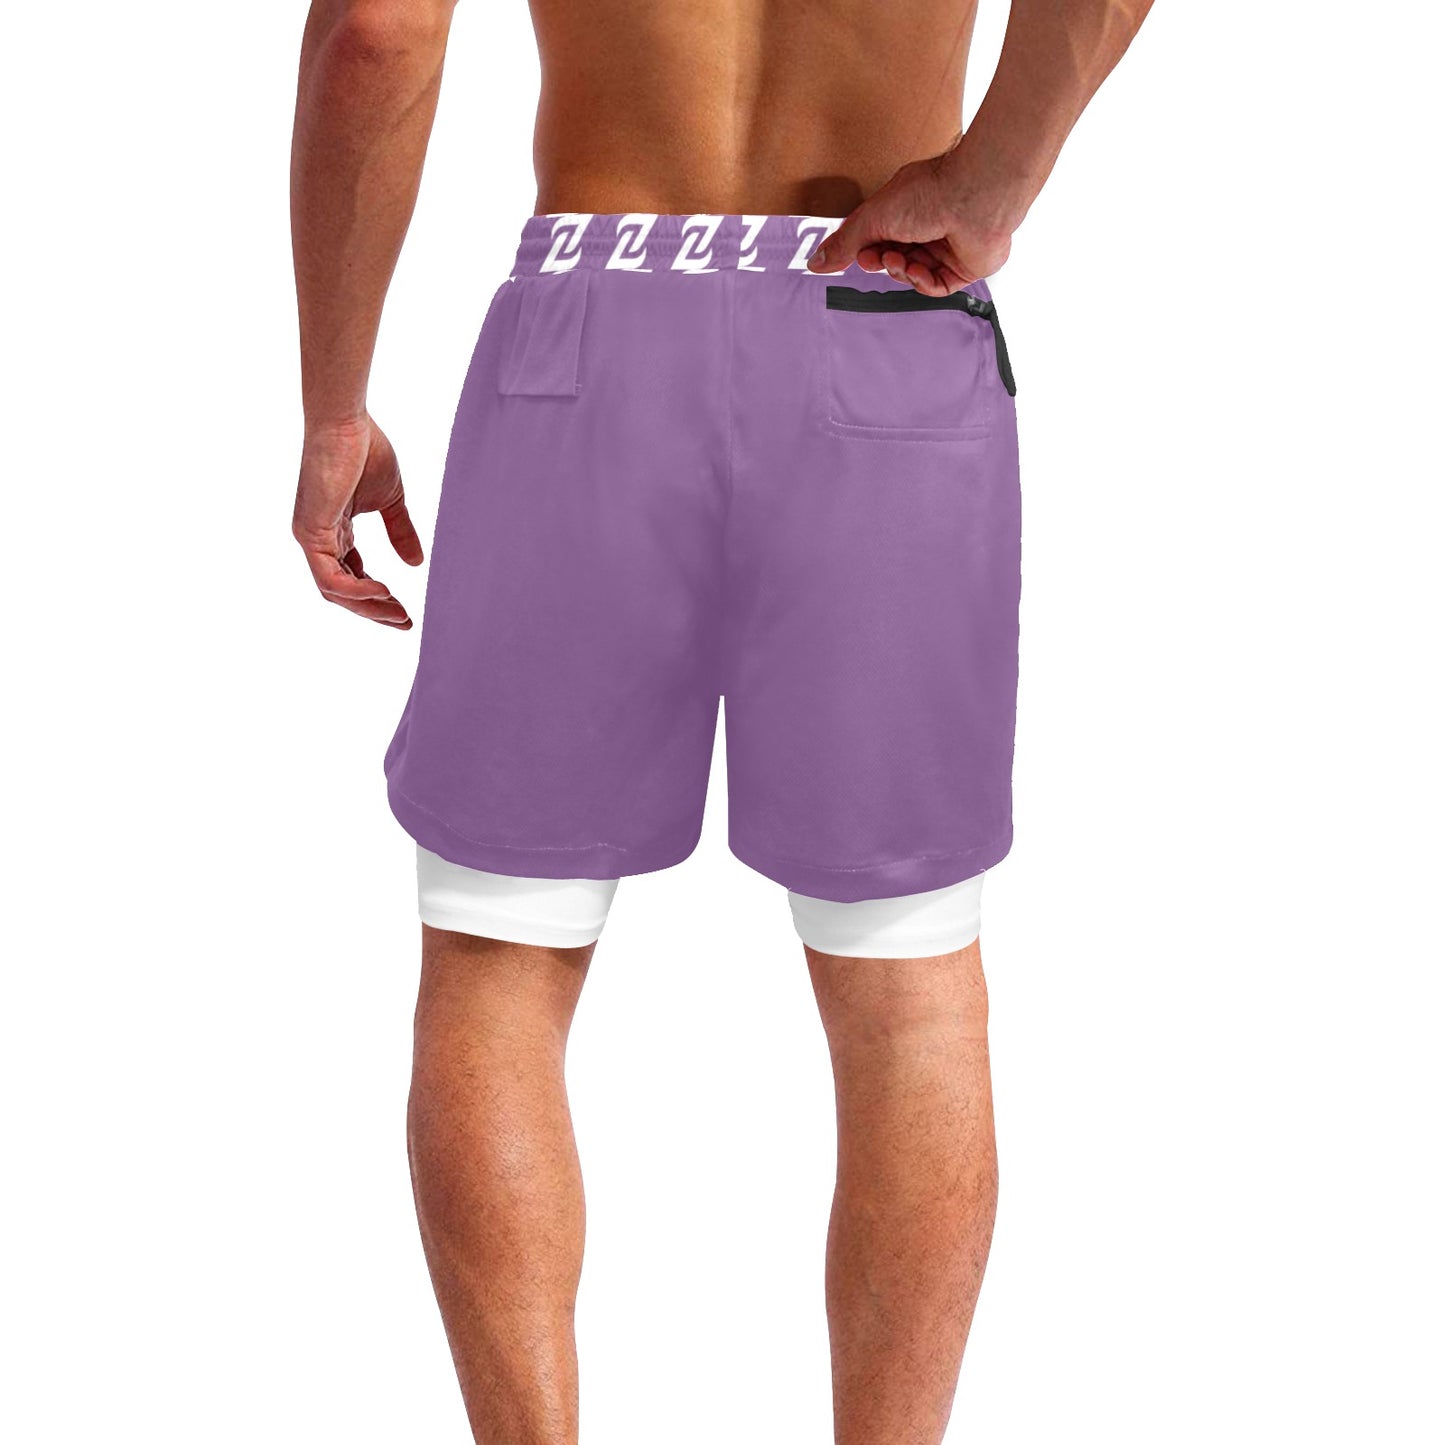 Zen Shorts with Liner - Lavender